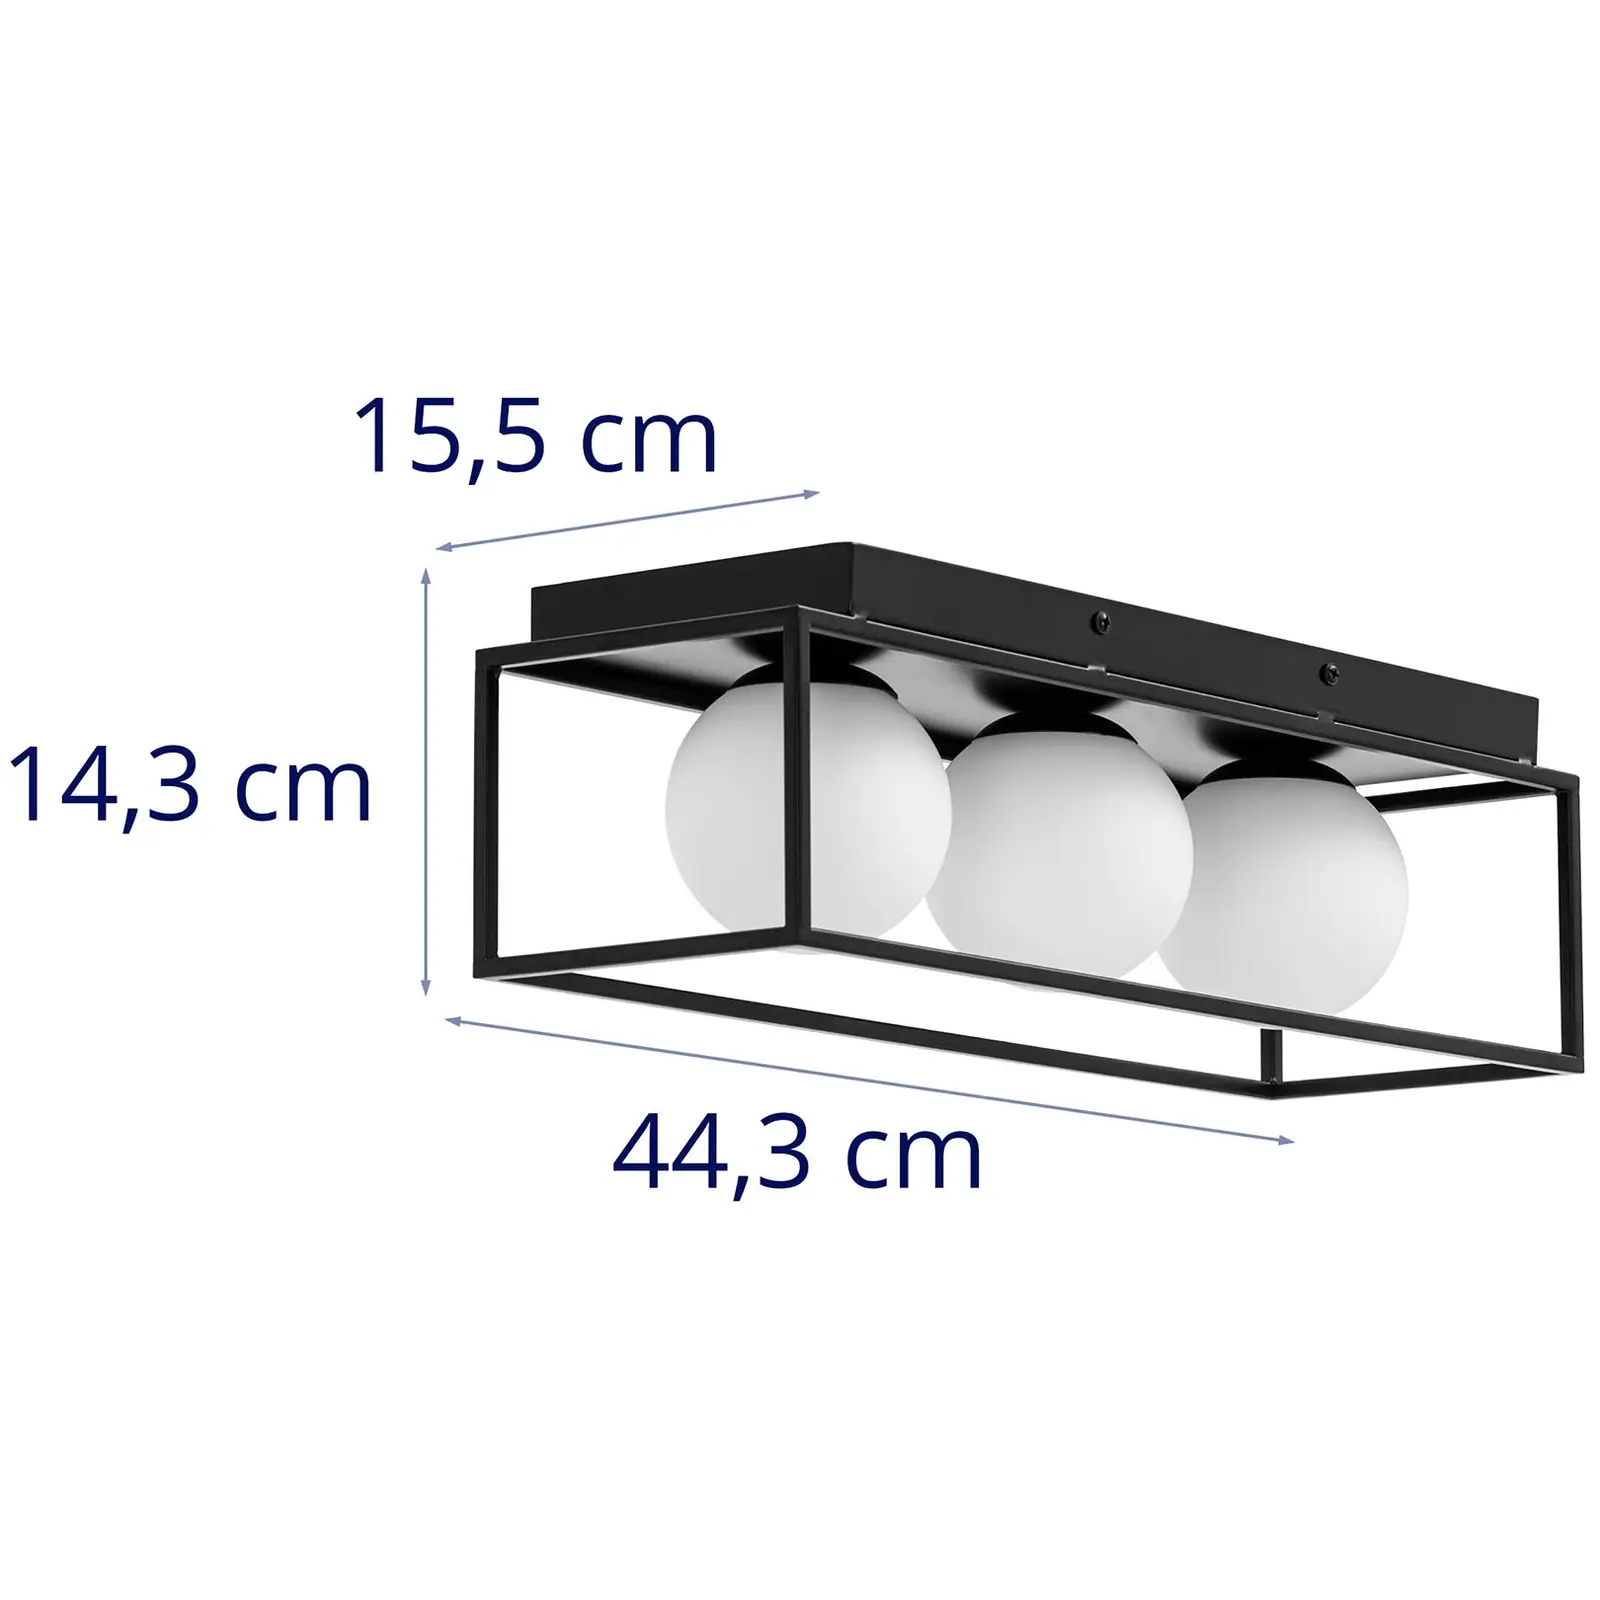 Φωτιστικό οροφής - 3 γυάλινες σφαίρες σε σιδερένιο πλαίσιο